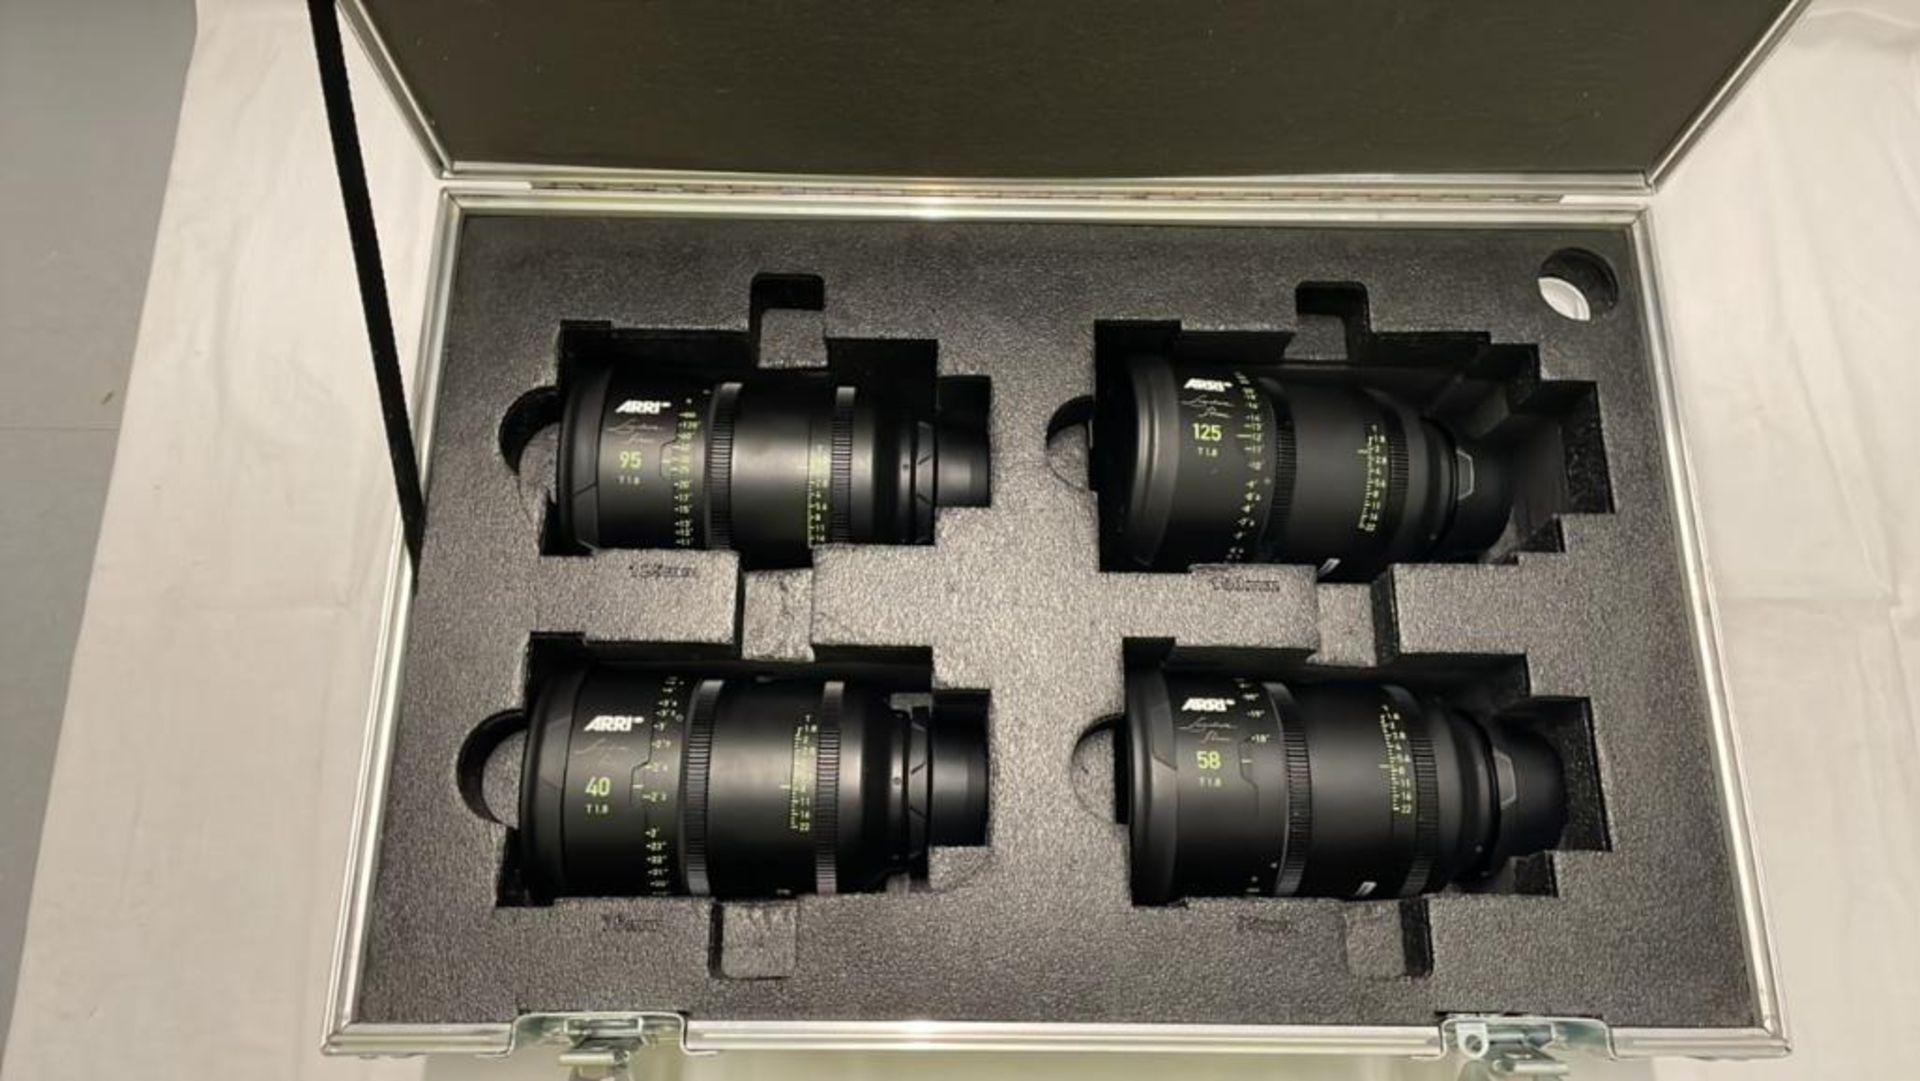 Set of 6 Arri Prime Lenses (29mm, 40mm, 85mm, 75mm, 95mm, 125mm) 2 flight case SN 18145, SN 53570, S